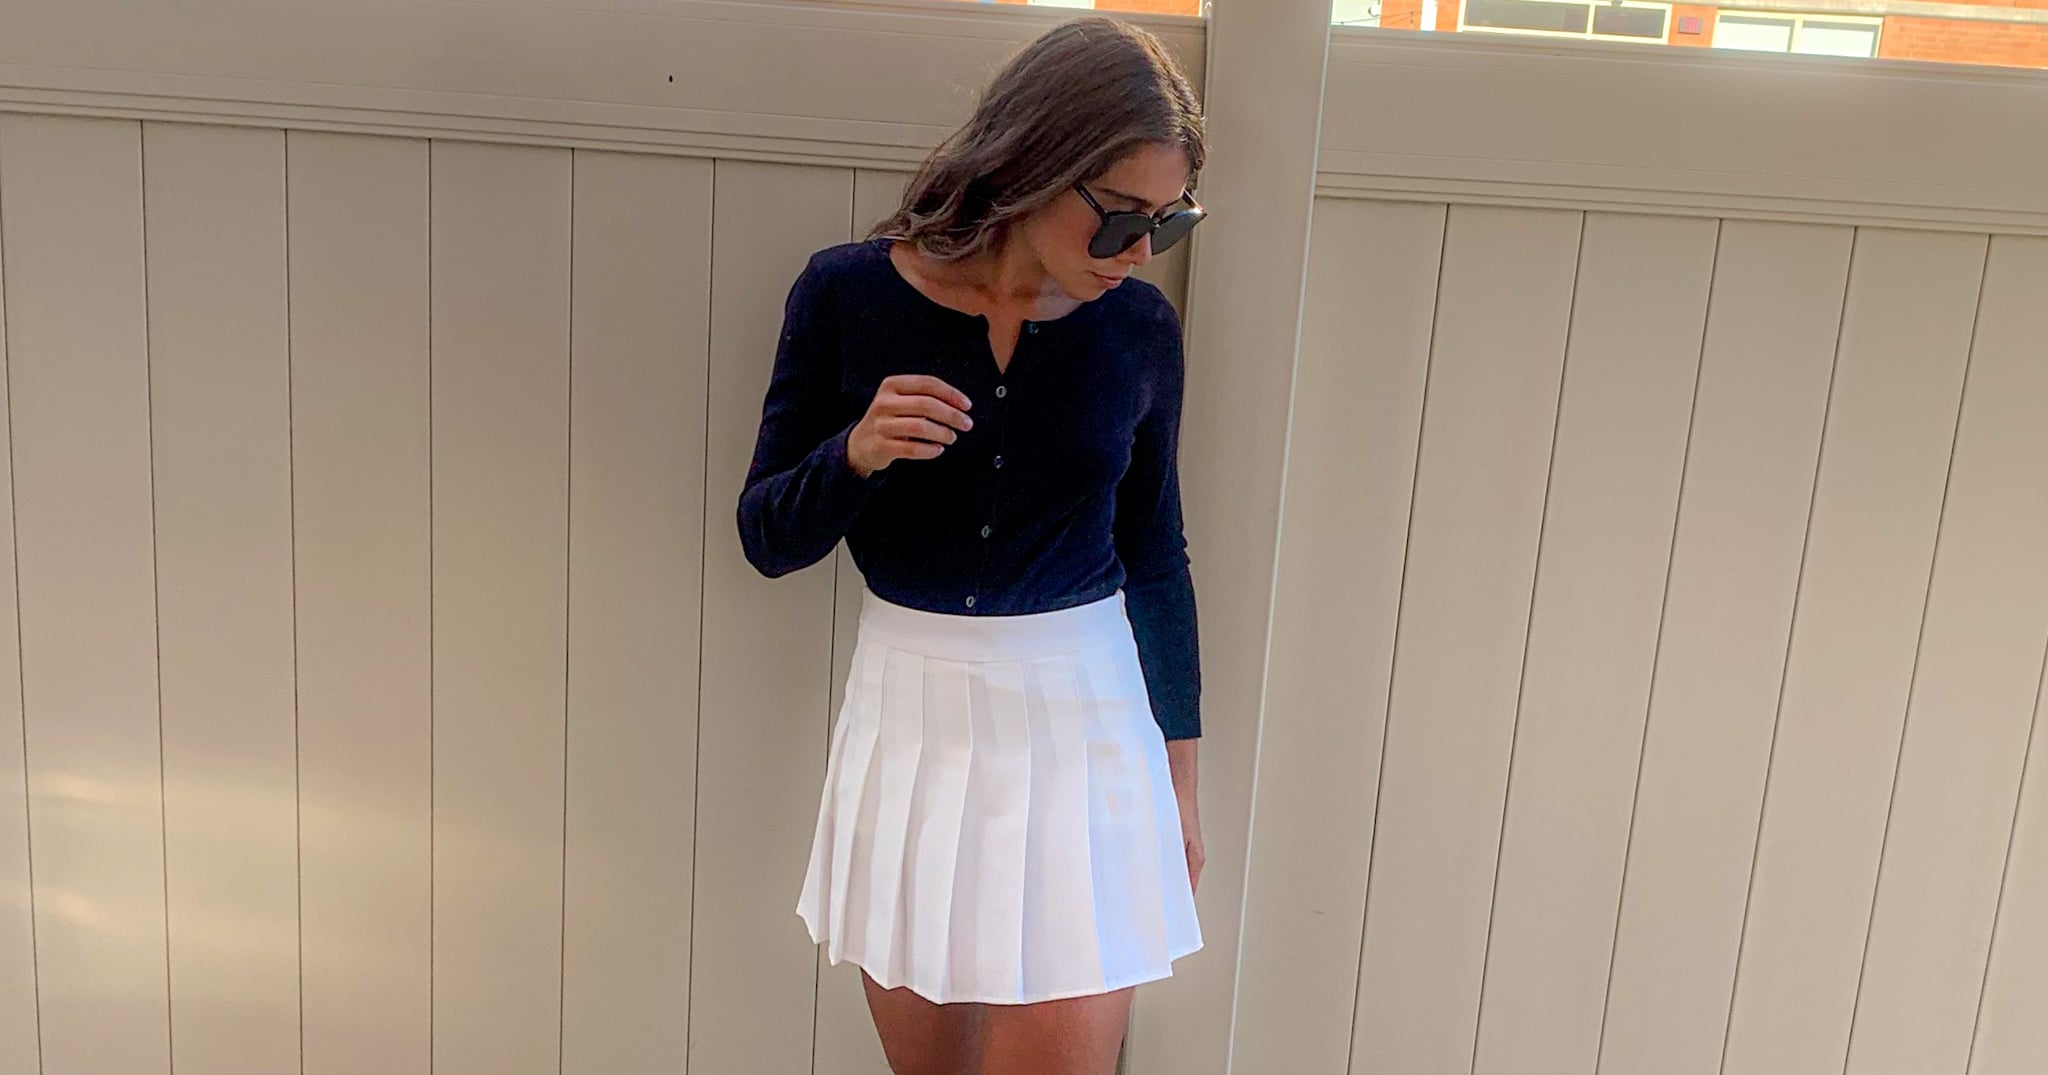 Asymmetrical Pleated Tennis Skirt